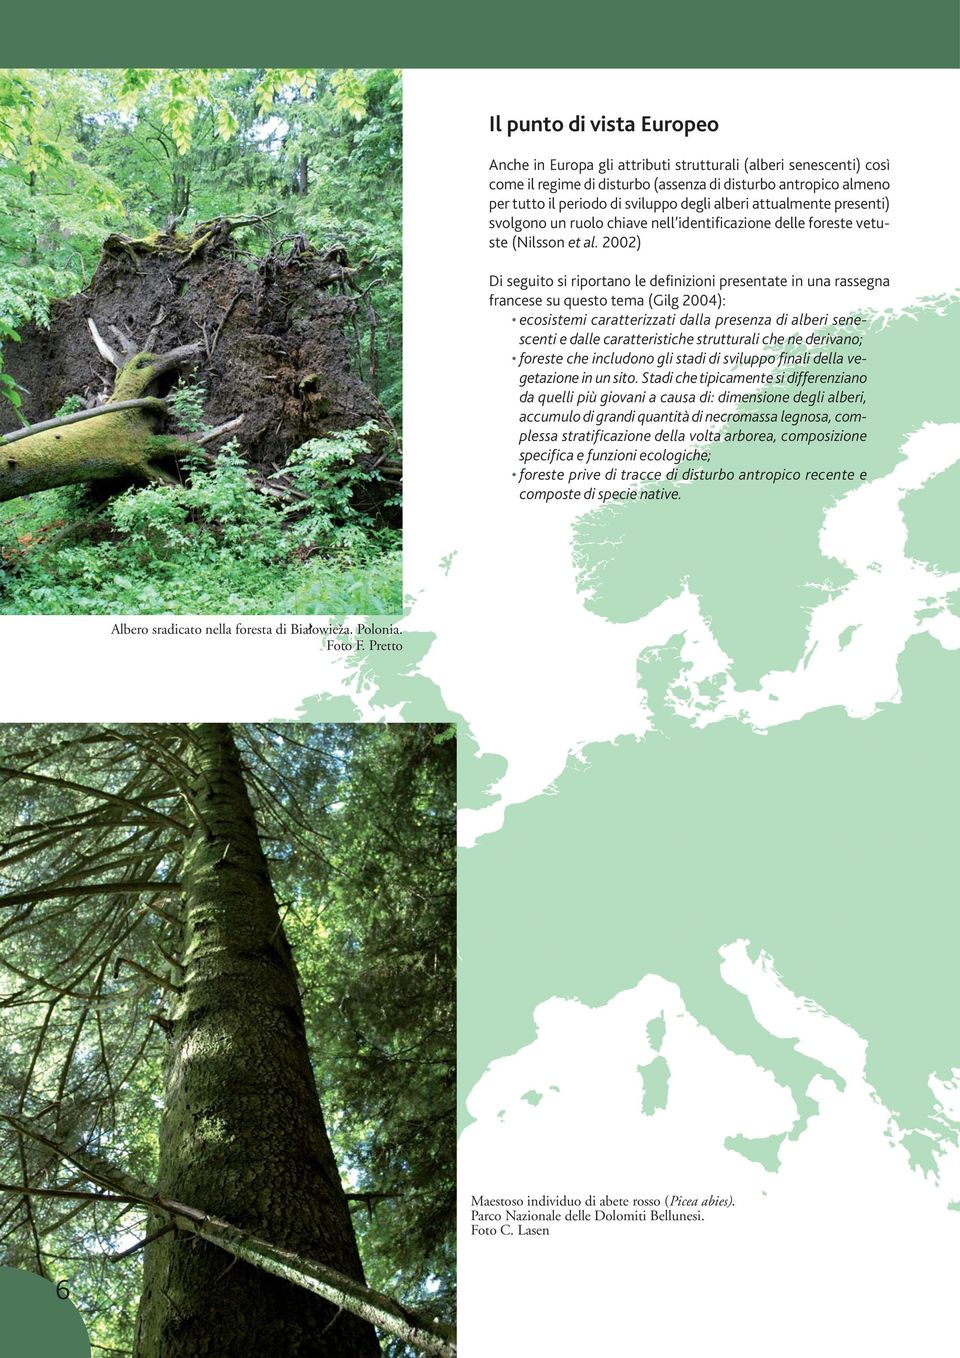 2002) Di seguito si riportano le definizioni presentate in una rassegna francese su questo tema (Gilg 2004): ecosistemi caratterizzati dalla presenza di alberi senescenti e dalle caratteristiche